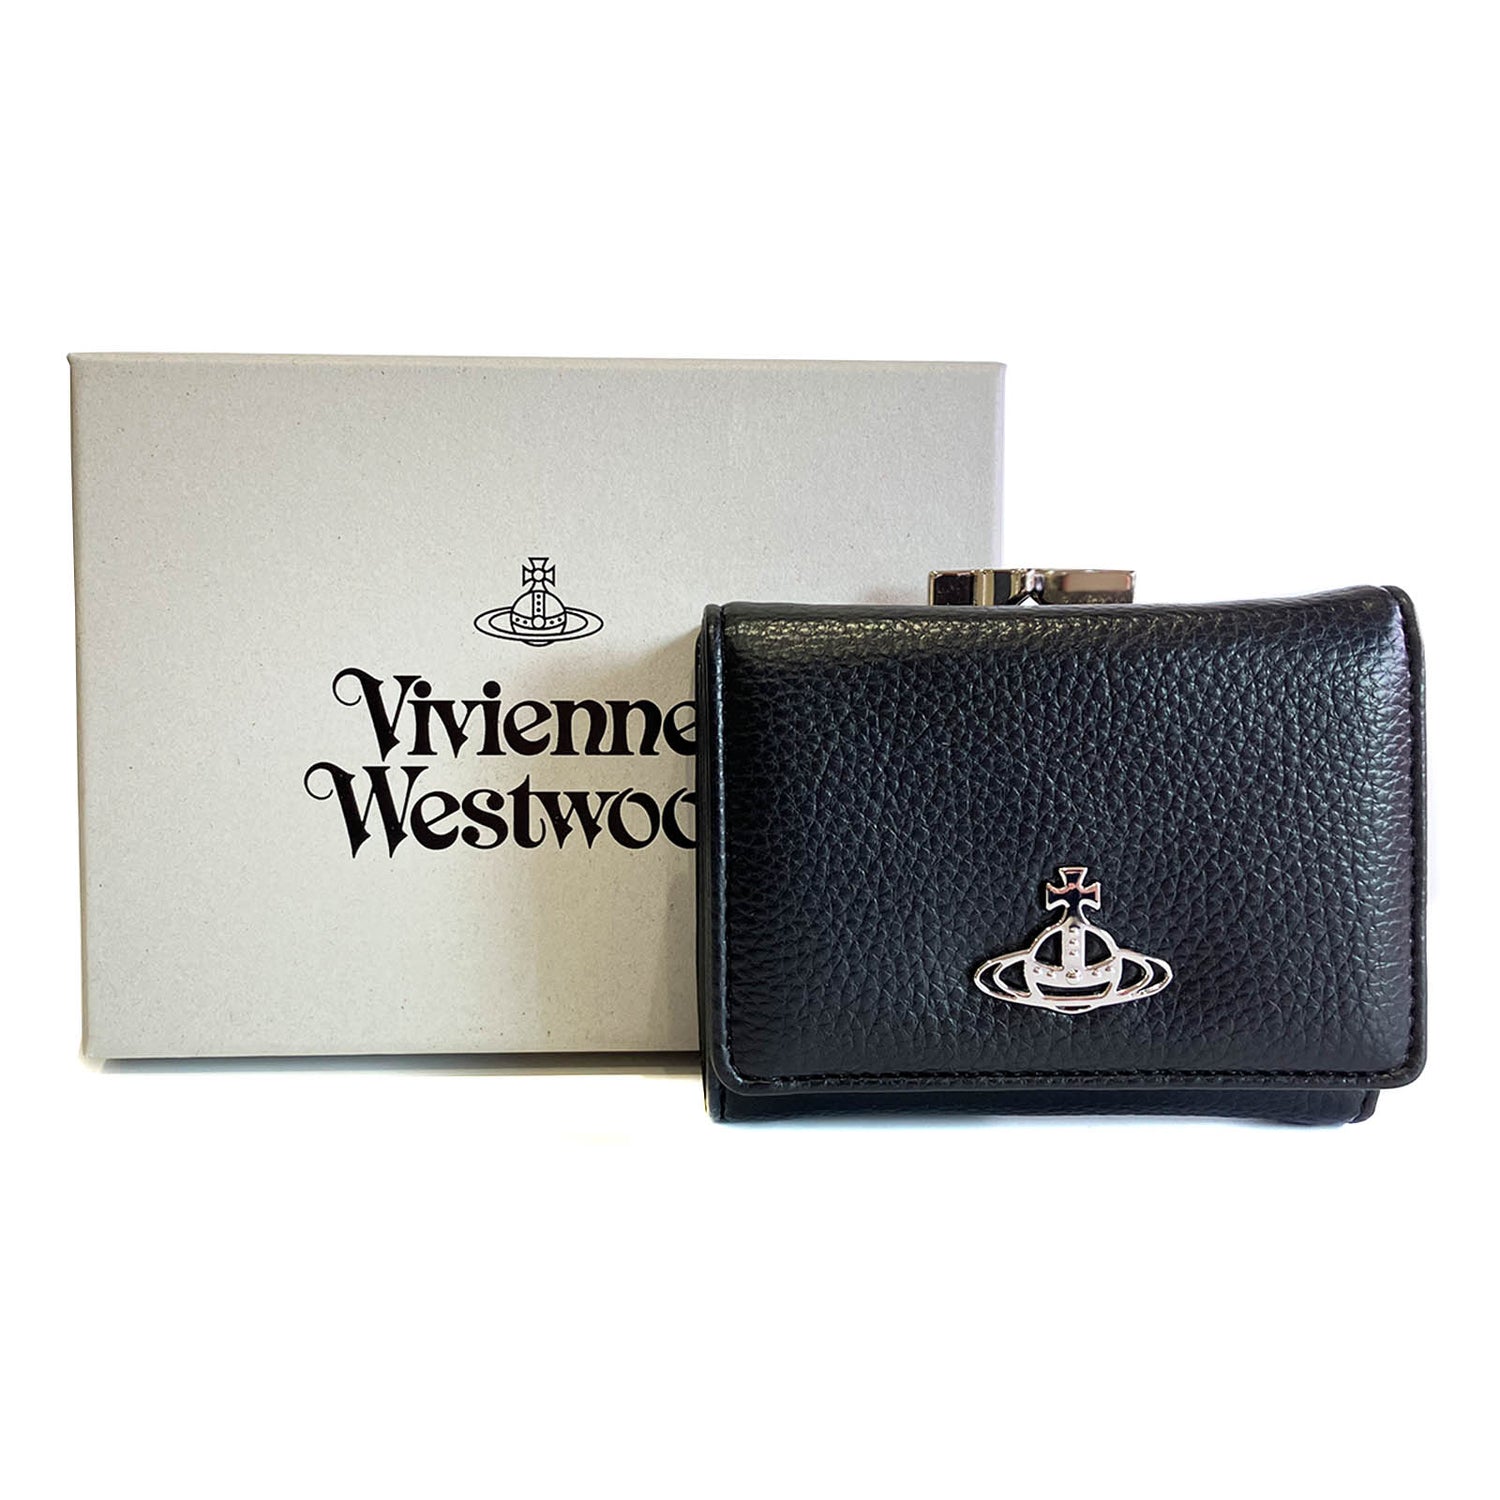 【正規品】 ヴィヴィアンウエストウッド 三つ折り財布 がま口 レディース 51010018 S000D N403 BLACK 送料無料